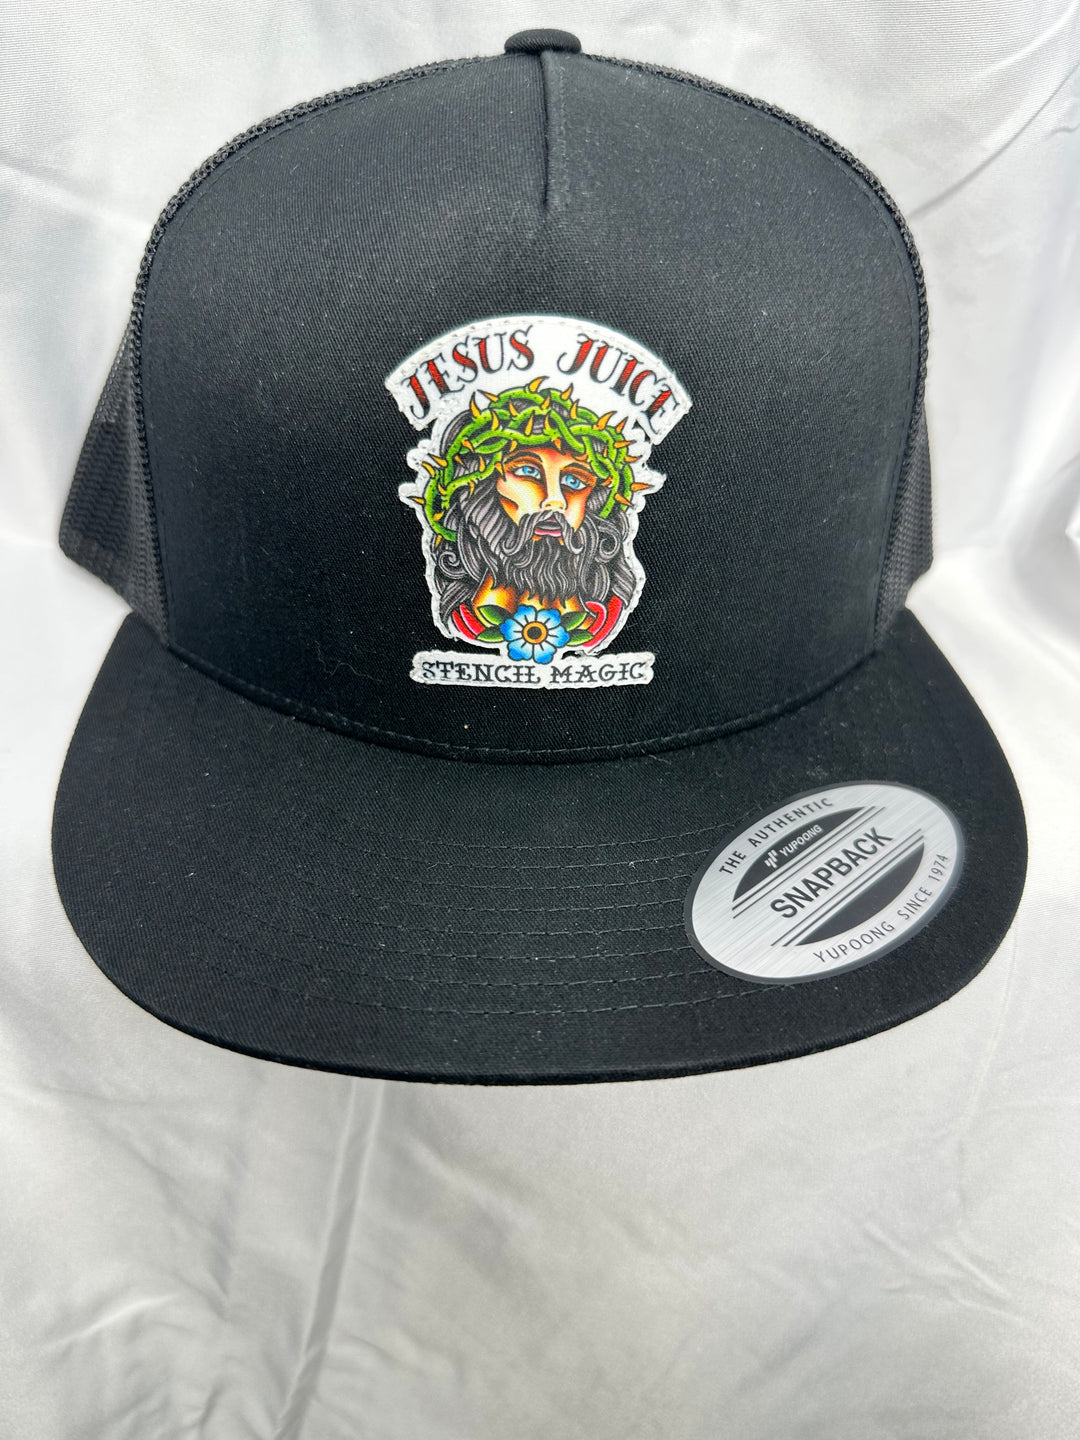 Jesus Juice Trucker Hat